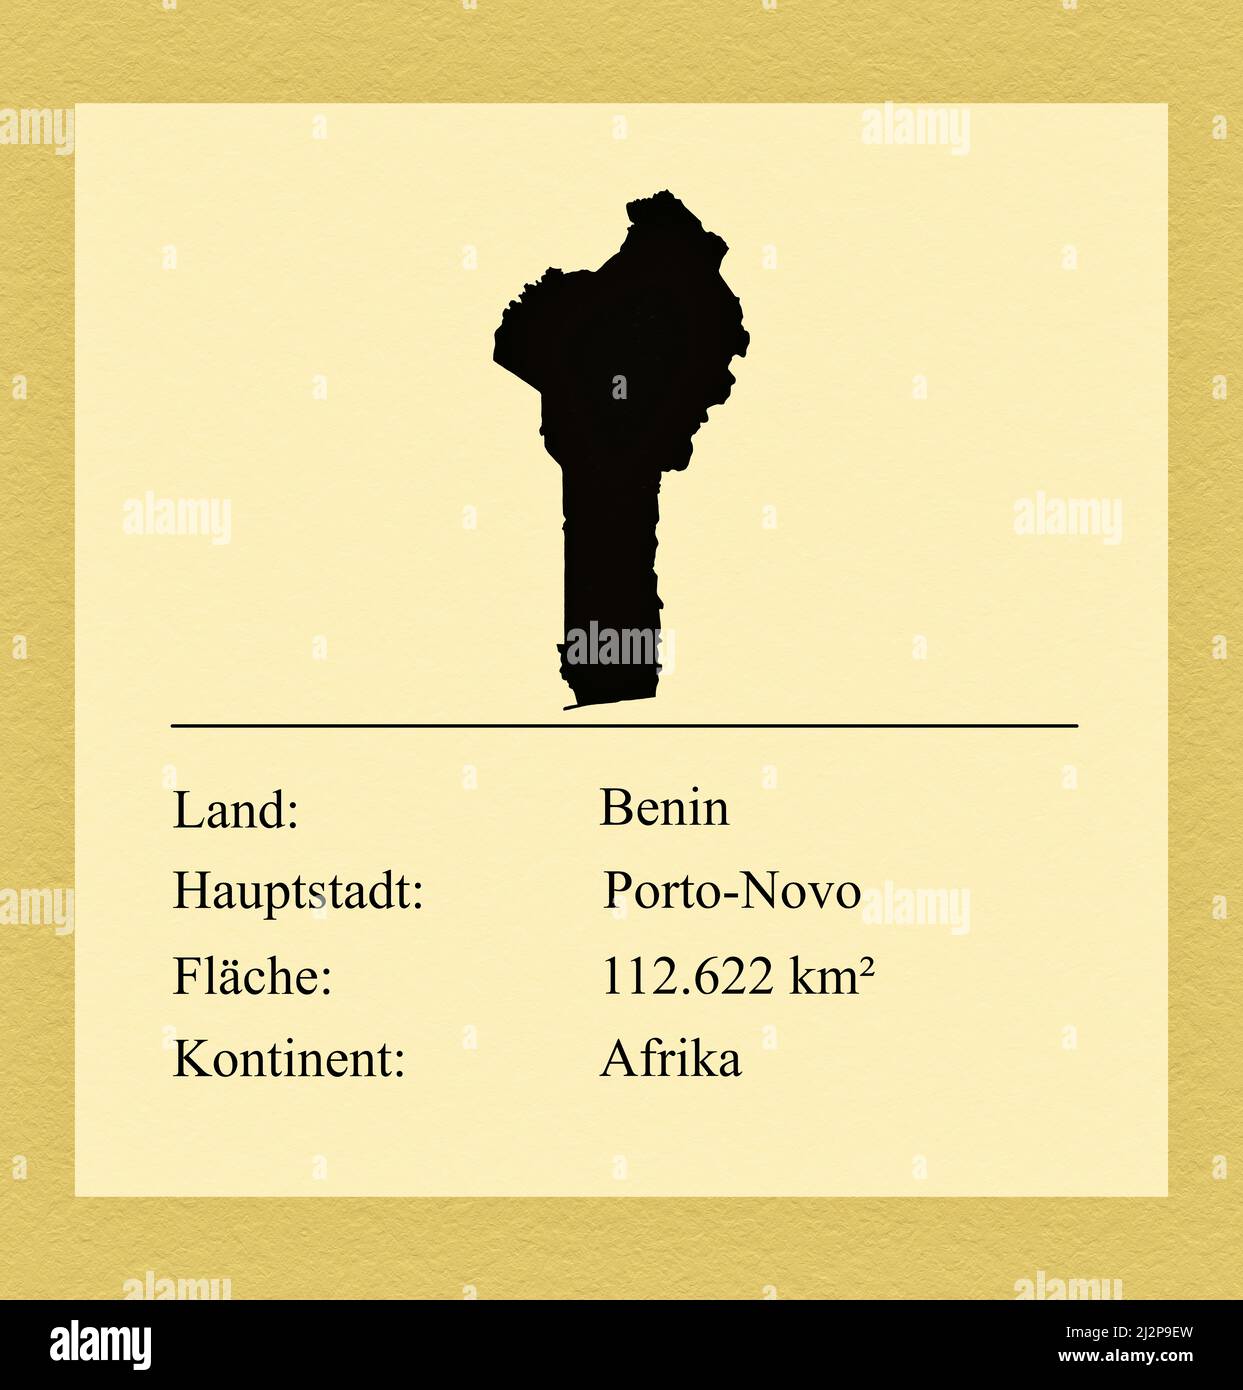 Umrisse des Landes Benin, darunter ein kleiner Steckbrief mit Ländernamen, Hauptstadt, Fläche und Kontinent Foto de stock